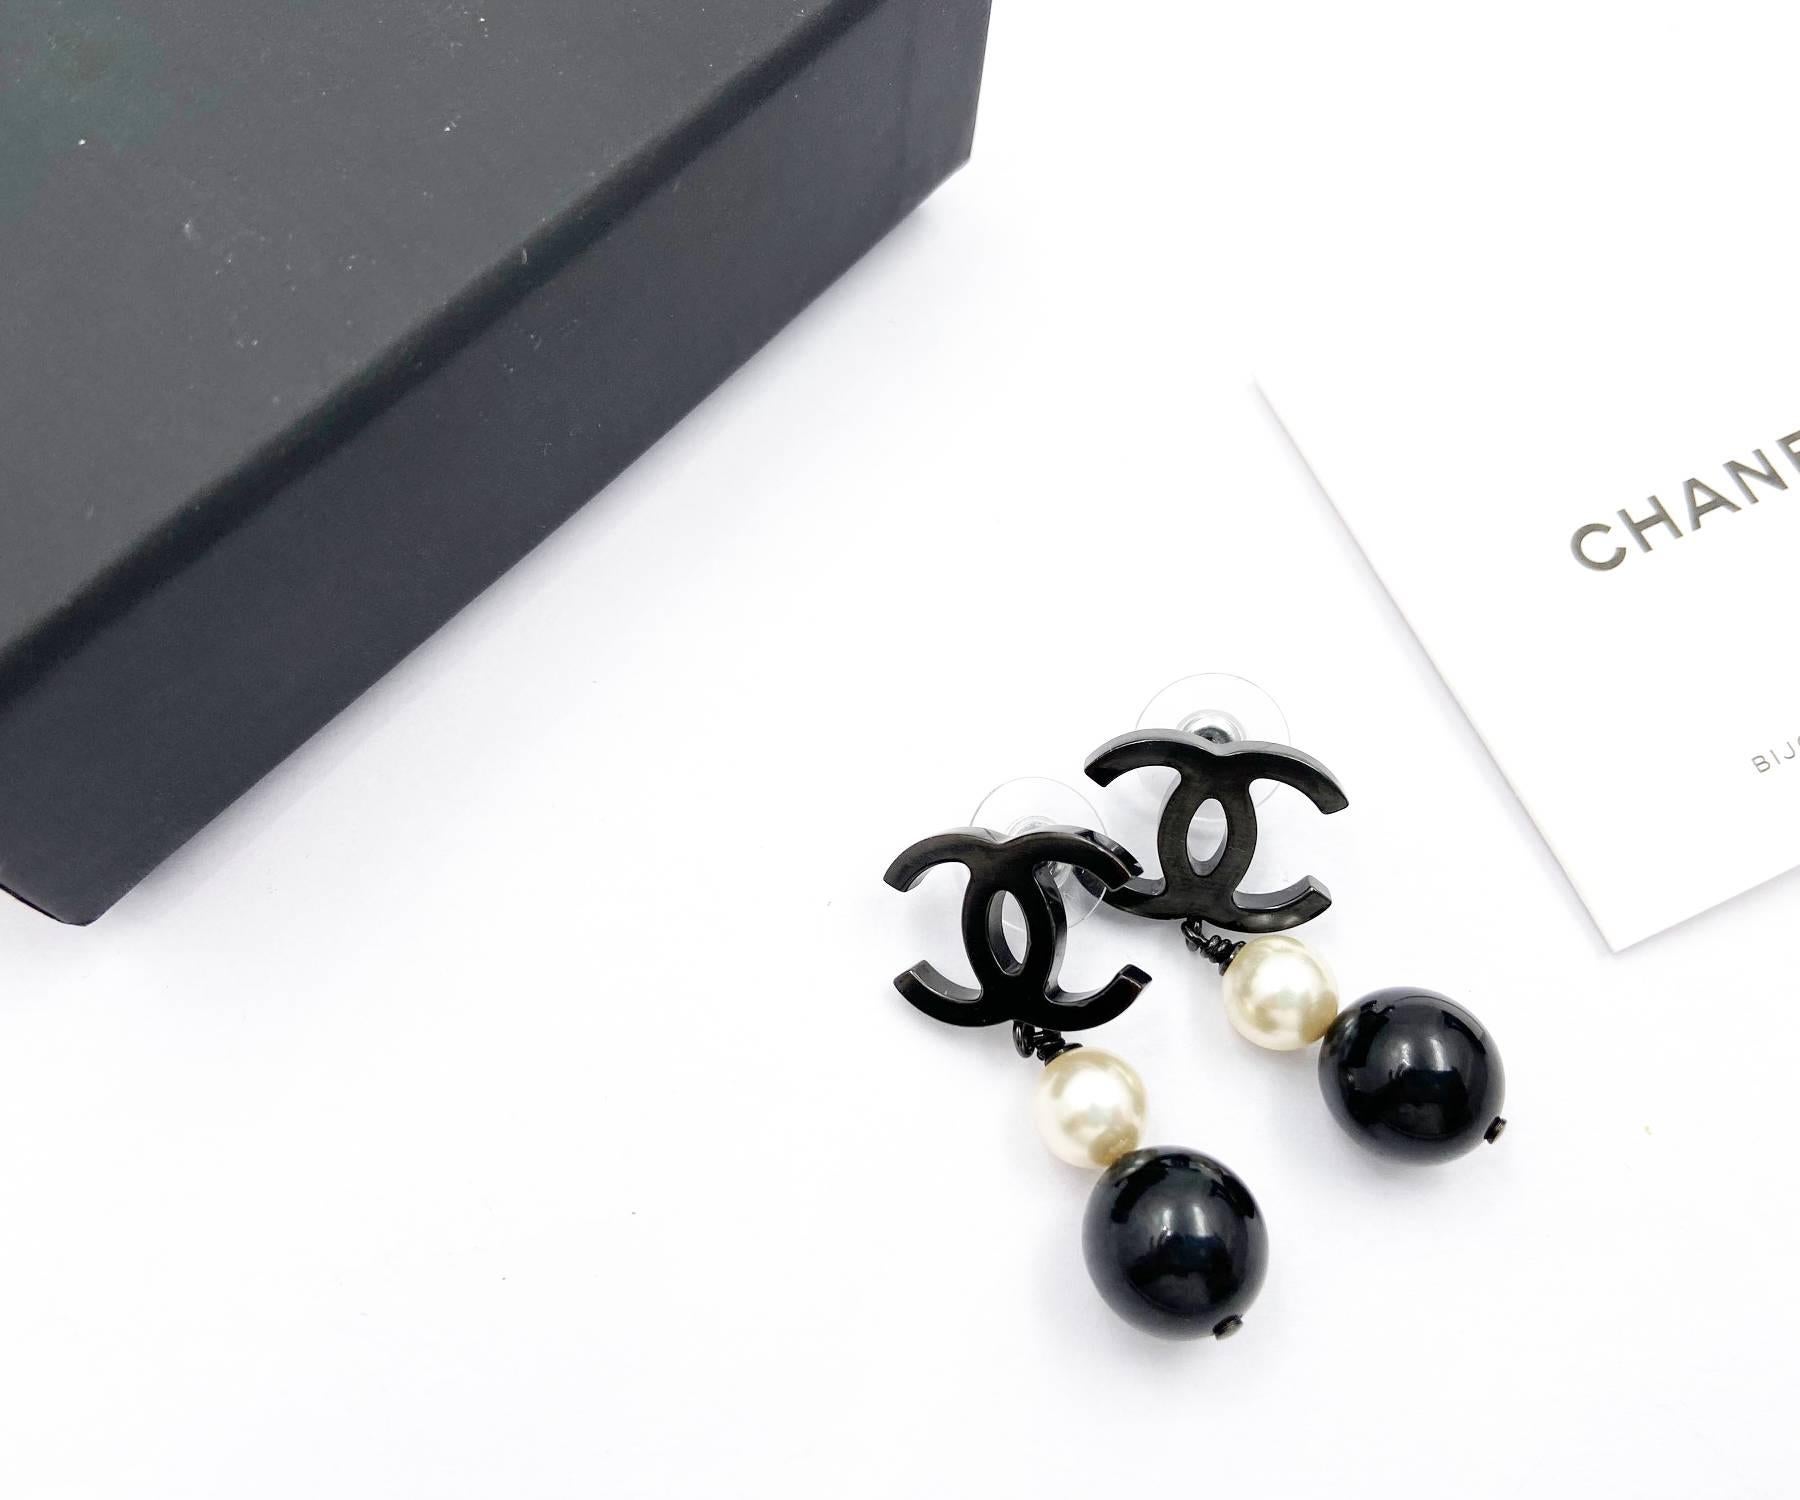 Chanel - Boucles d'oreilles perles noires CC - Perles noires - Piercing Dangle

*Marked 14
*Fabriqué en Italie
*Vient avec la boîte et la pochette d'origine

-Il mesure environ 1,5